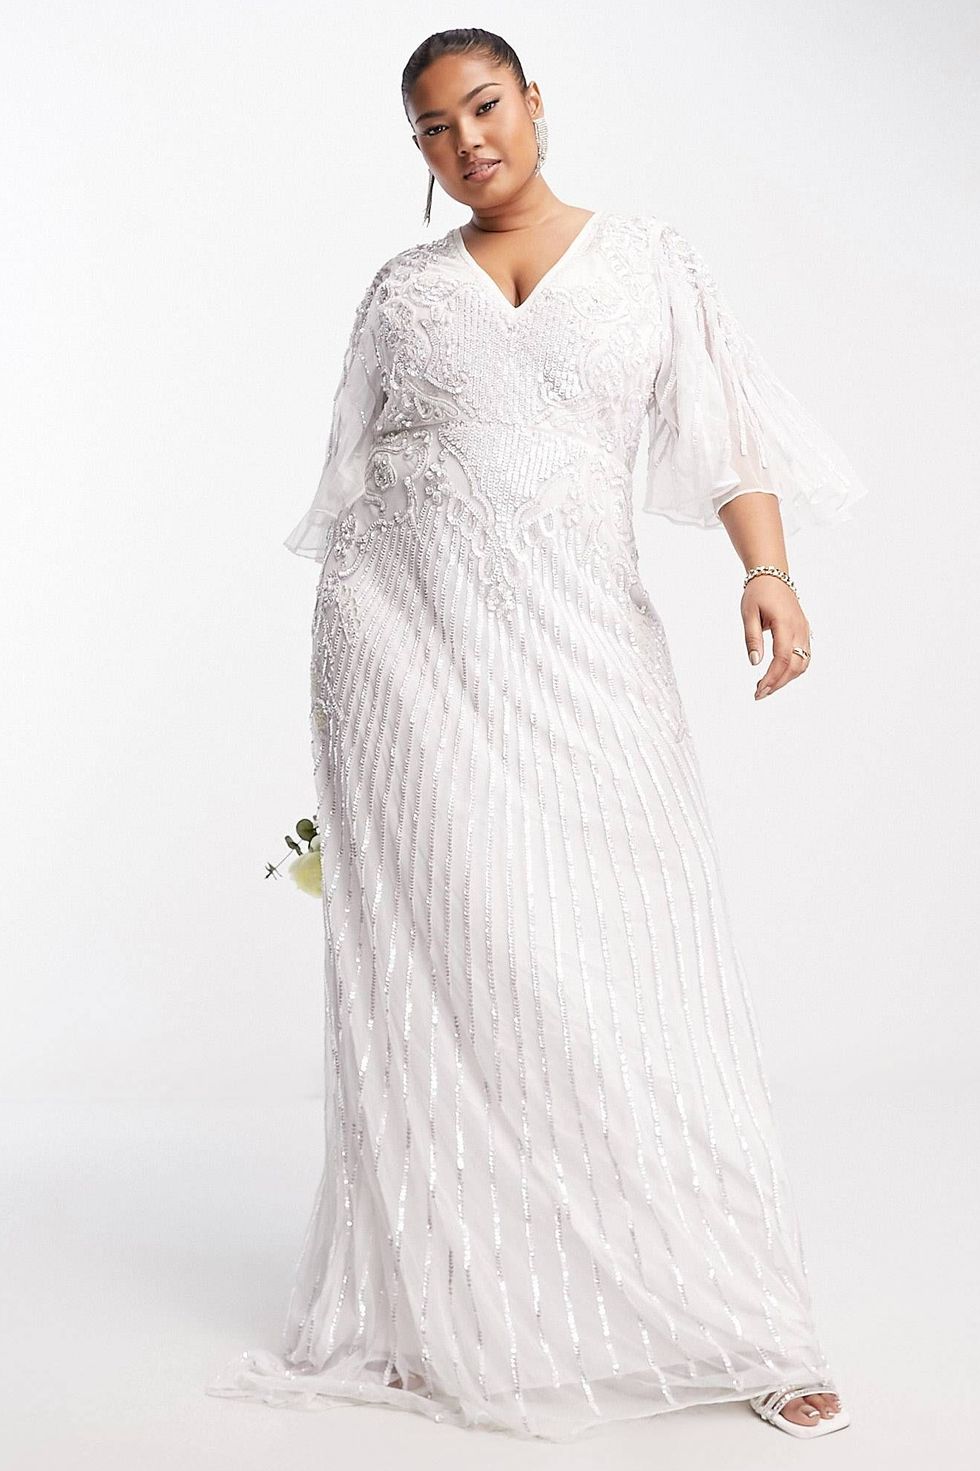 Eliza flutter sleeve embellished wedding dress